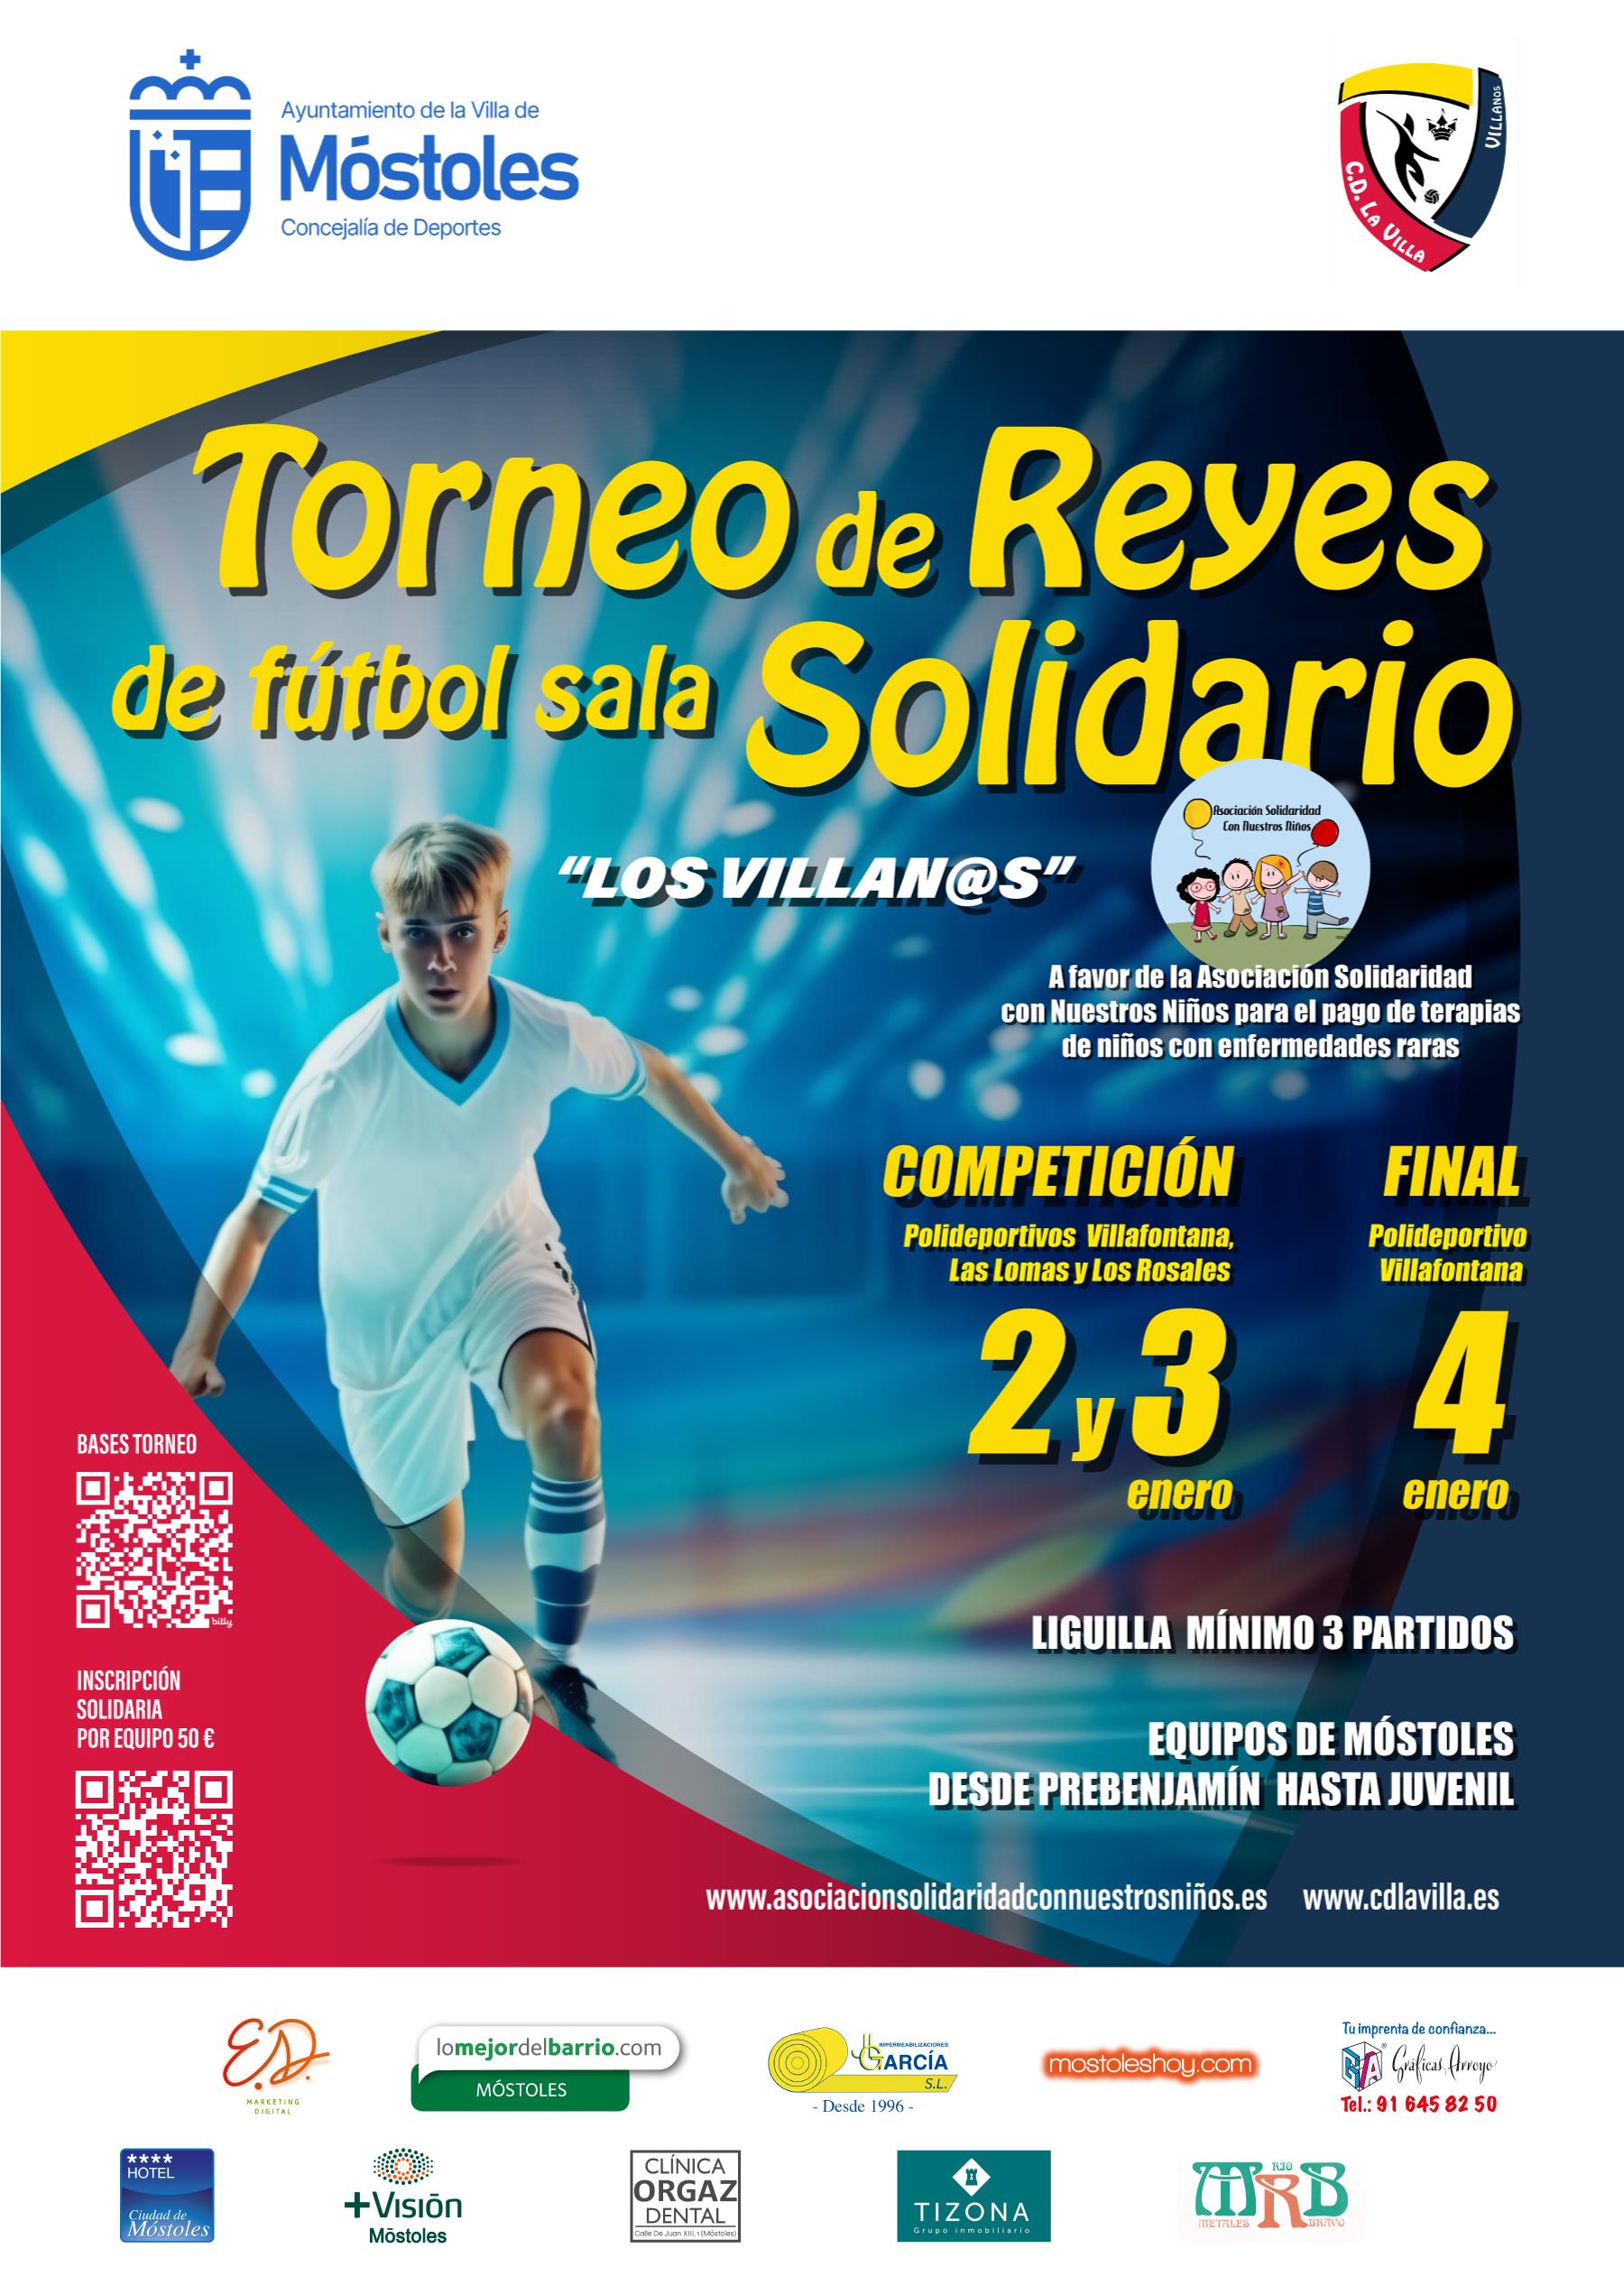 "Torneo de Reyes de fútbol sala Solidario” Los Villanos”